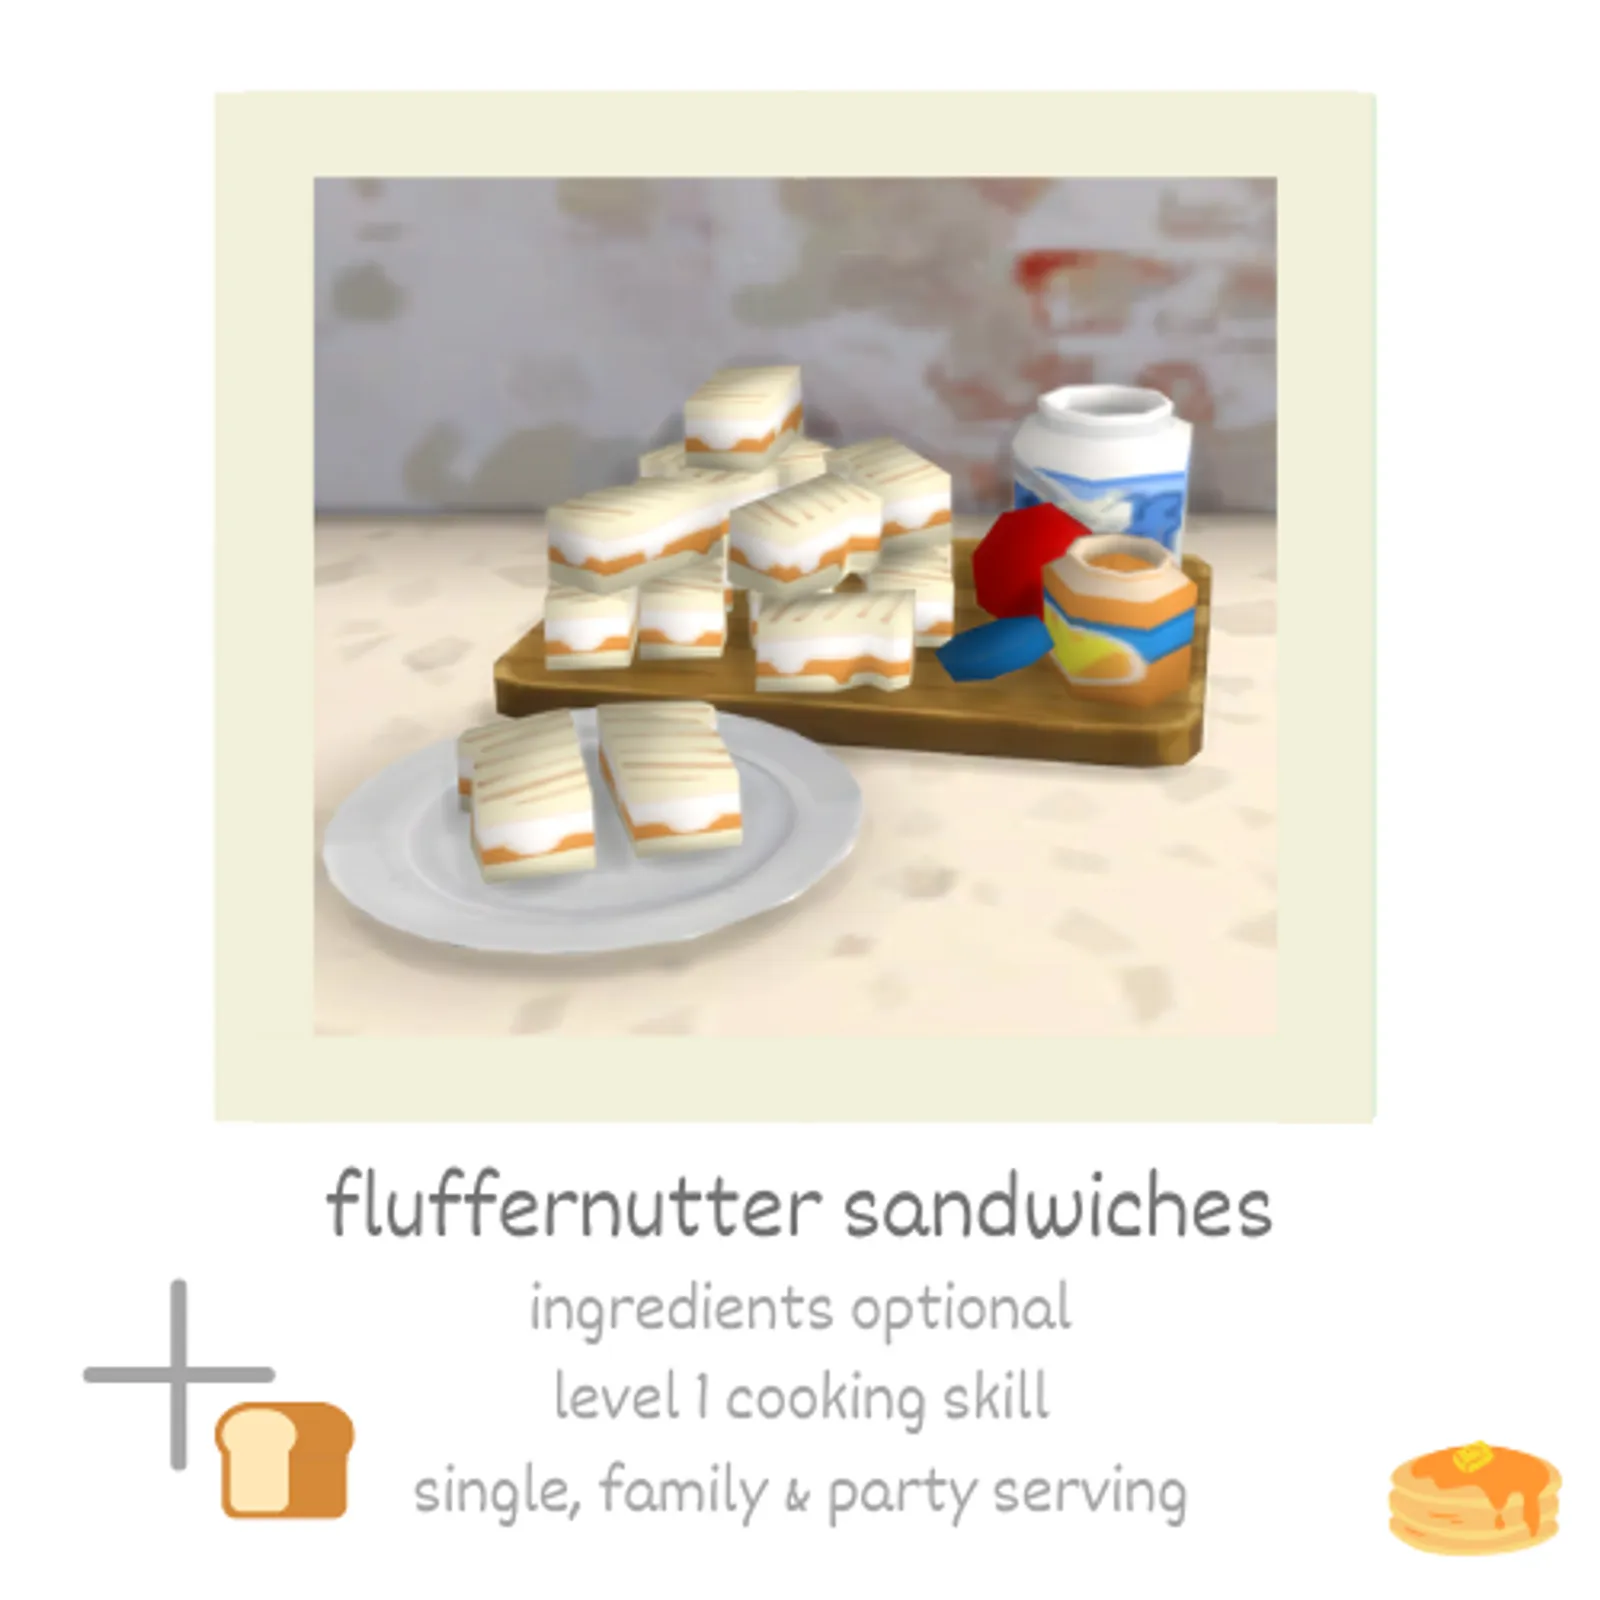 fluffernutter sandwiches